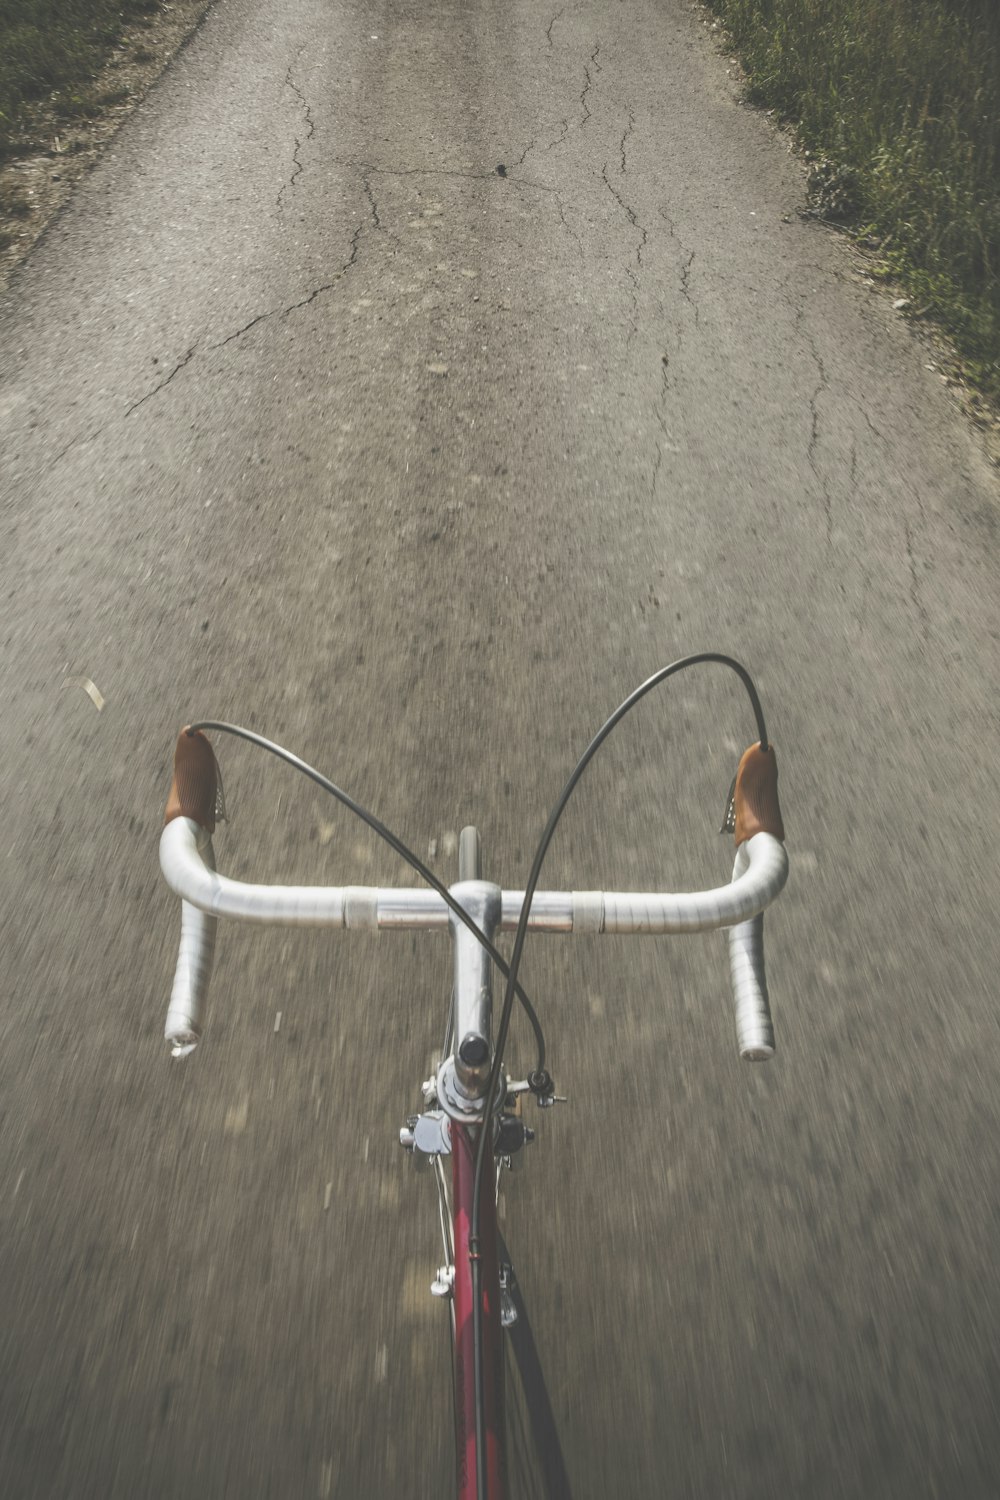 Bicicleta de carretera gris y roja entre hierba